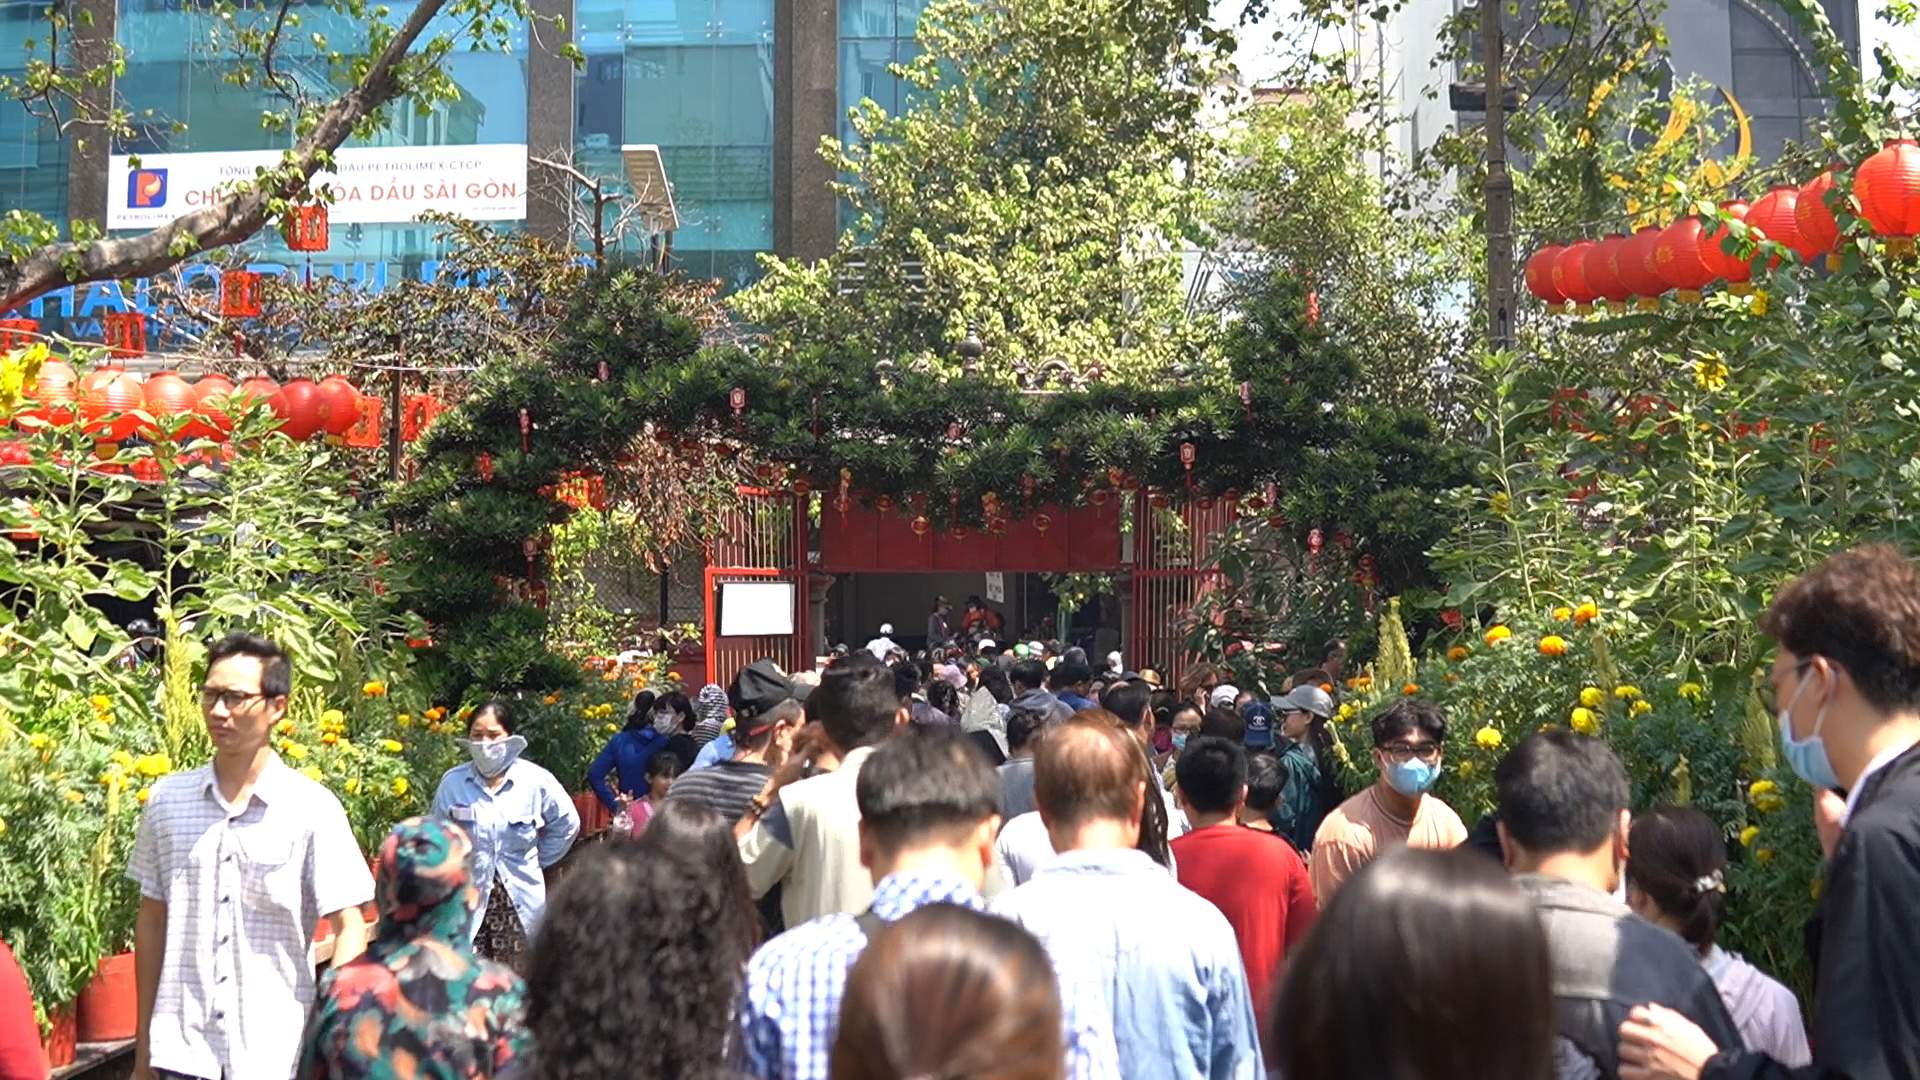 Hàng ngàn người đội nắng đợi đến giữa trưa để vào chùa cầu an ngày vía Ngọc Hoàng- Ảnh 1.